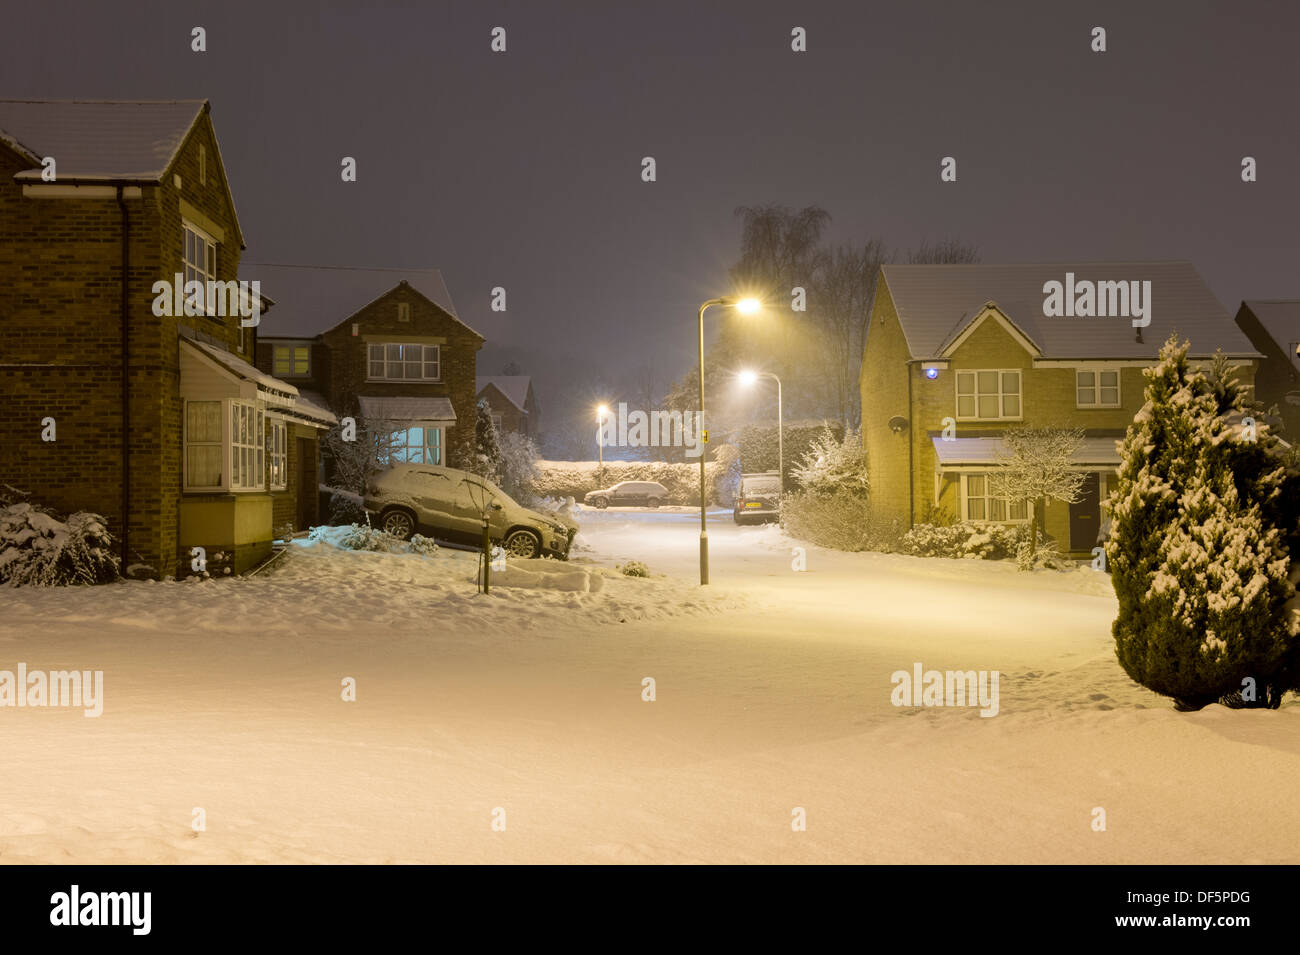 Starburst Licht von steet Lampen nachts Private moderne Häuser im kalten, schneebedeckten cul-de-sac-Burley in Bösingen, England, UK. Stockfoto